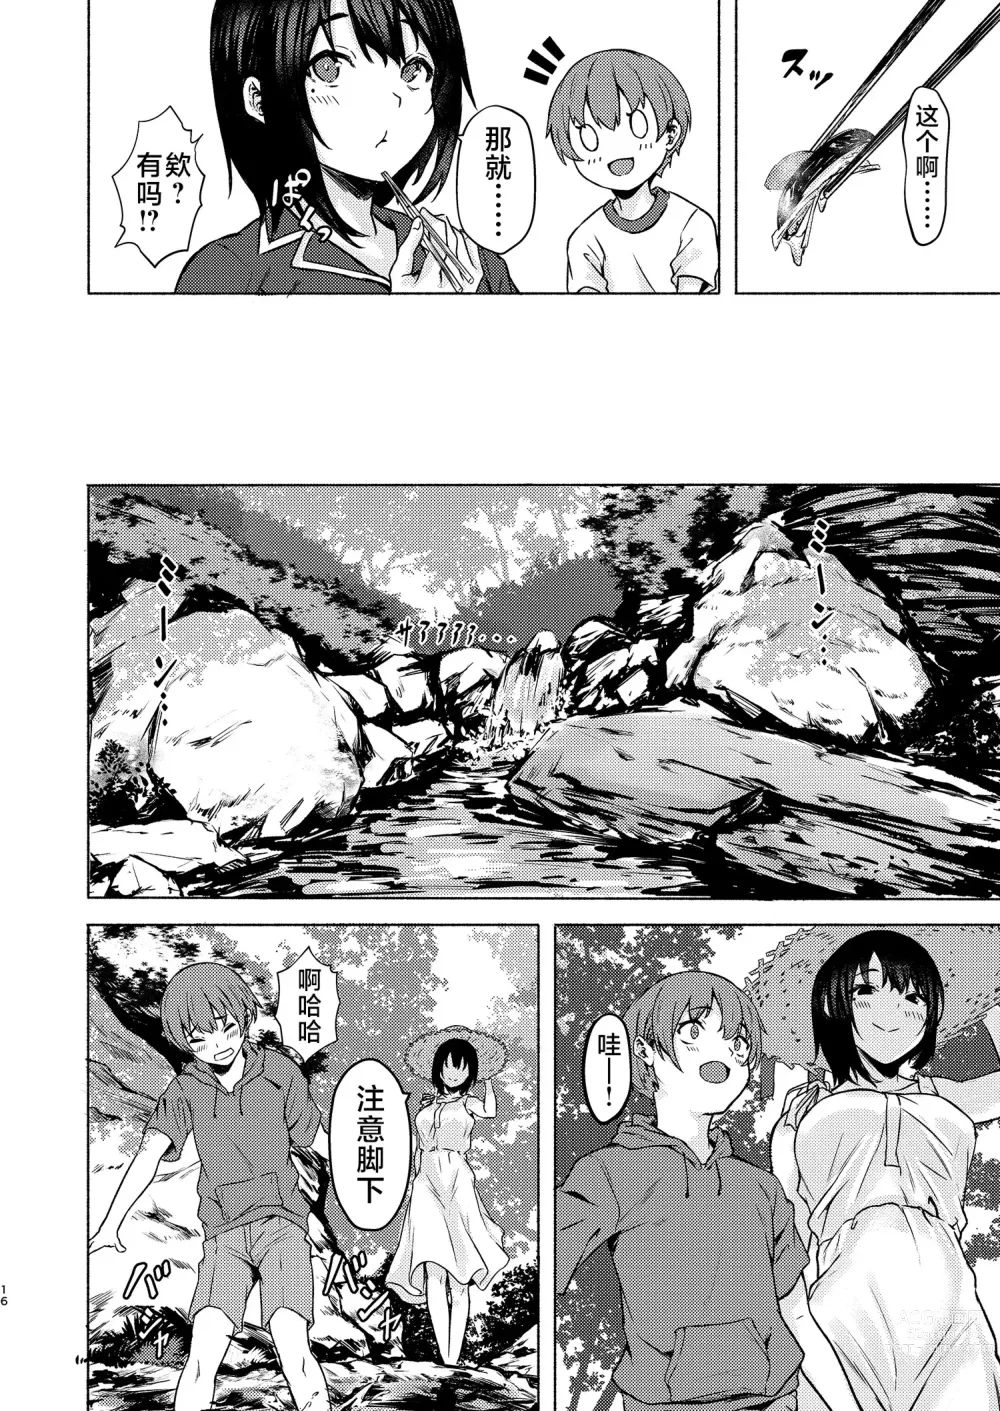 Page 16 of doujinshi Motto Okkina Saori-chan wa Bukiyou ni Eroi